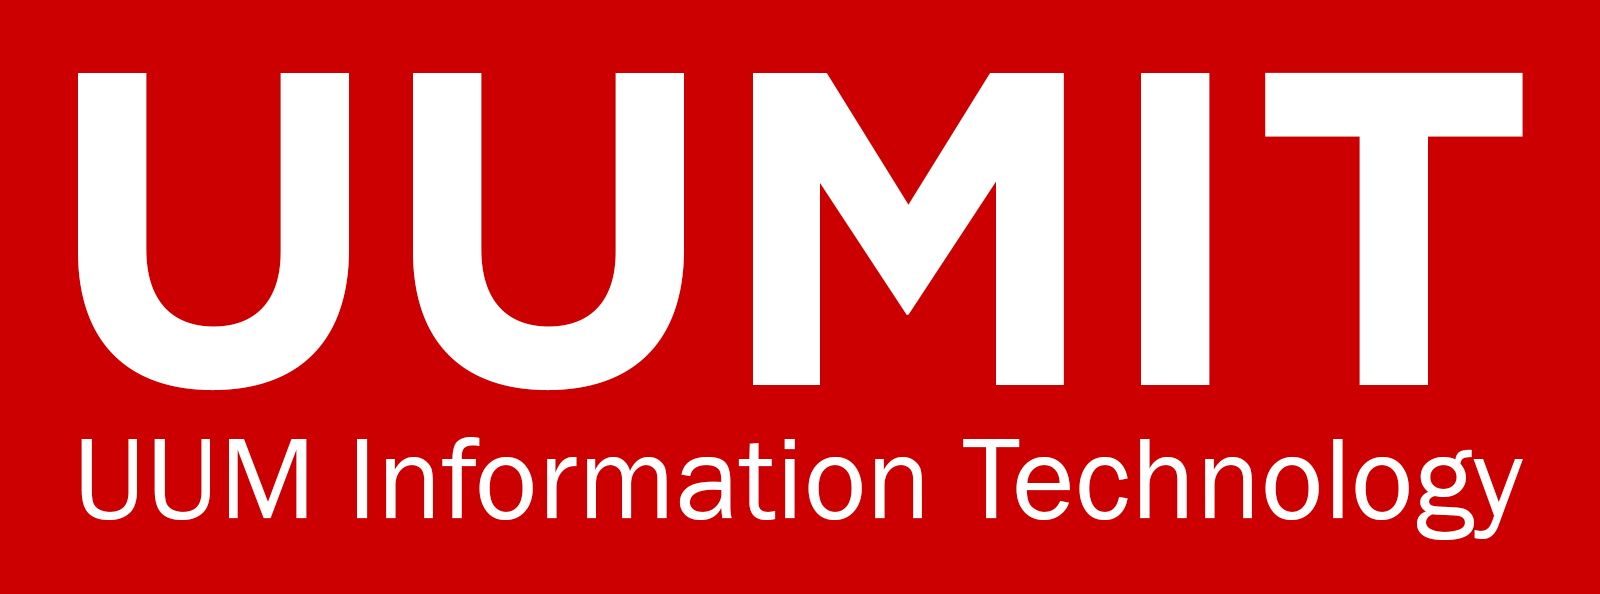 uumit-logo